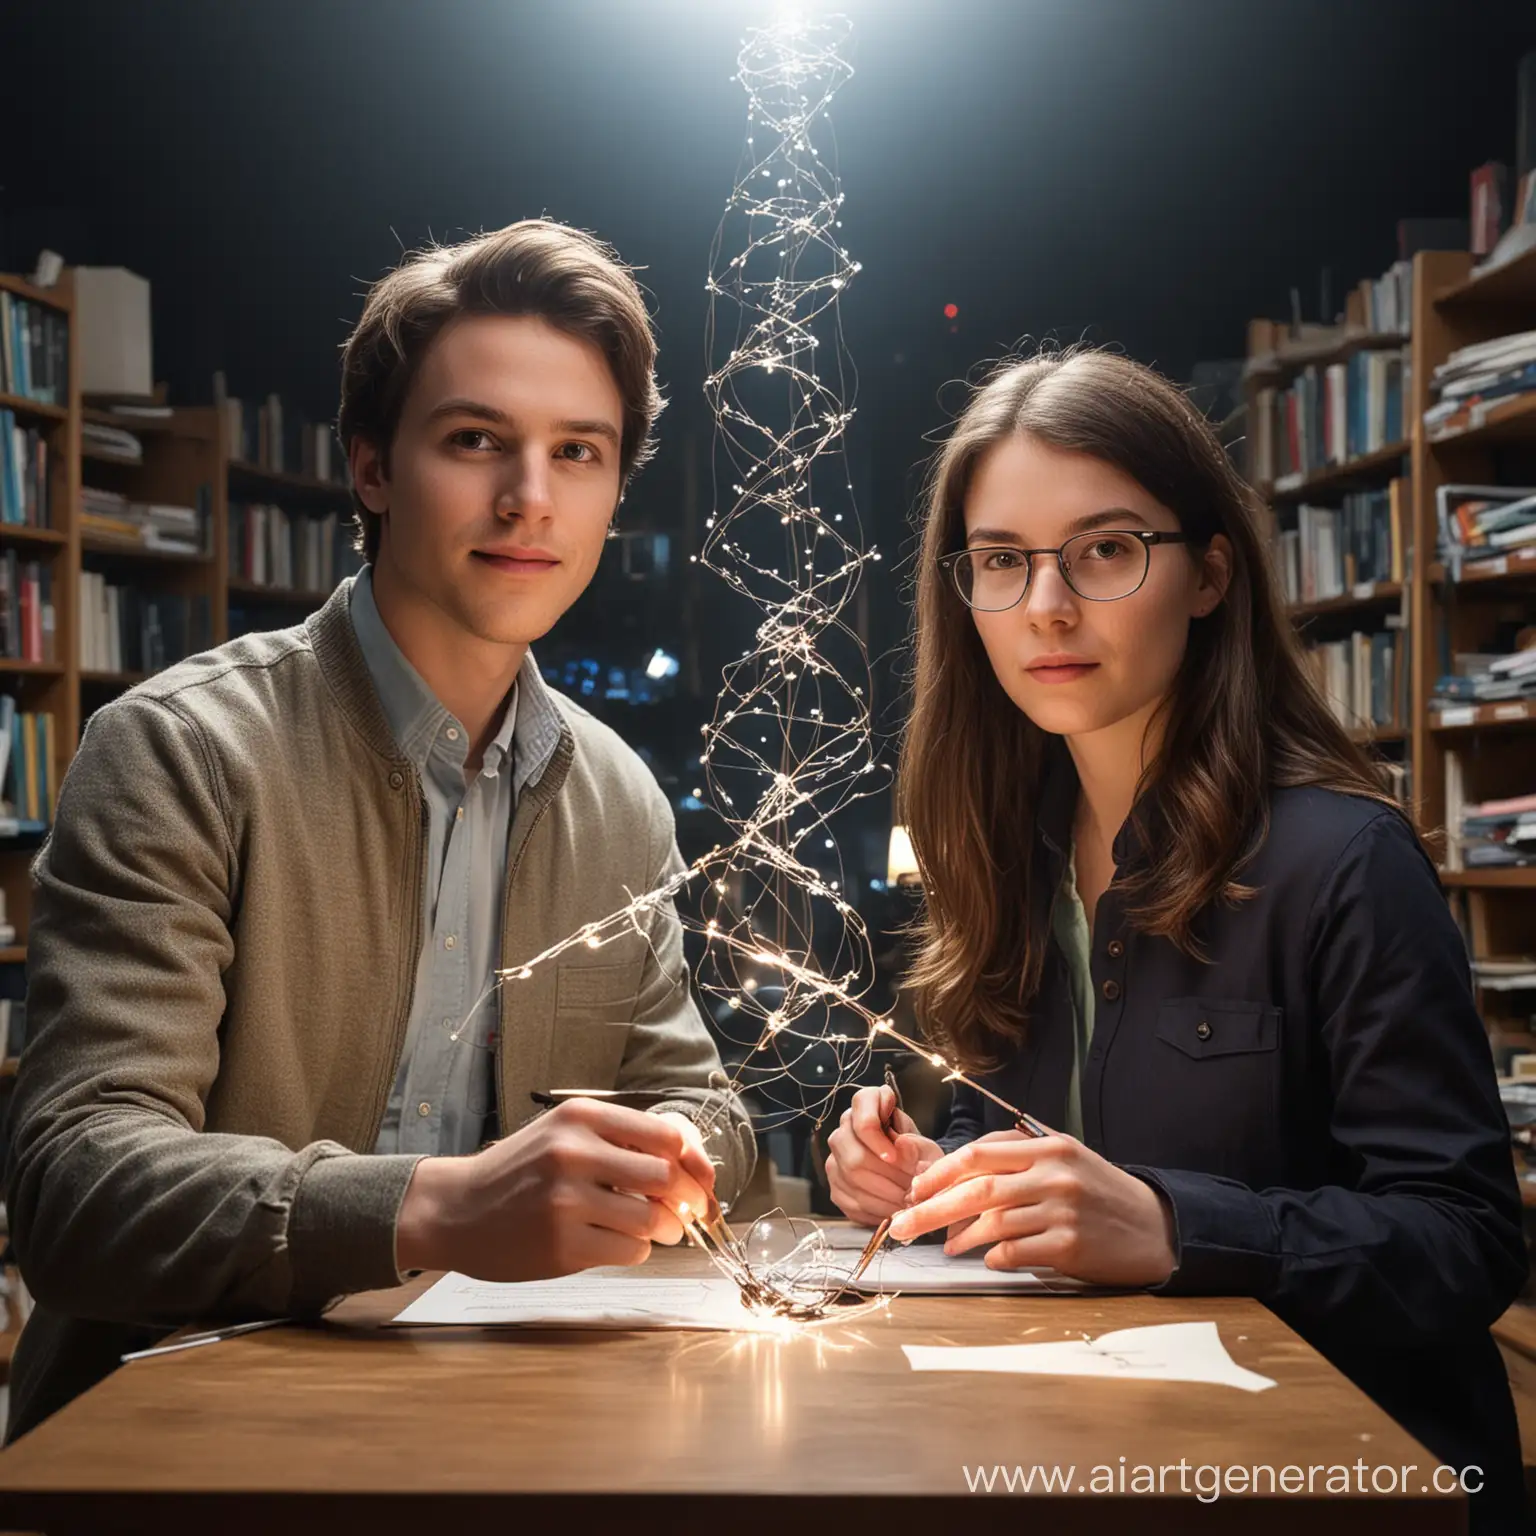 Эмили и Дэвид работают над революционным проектом по изучению квантового времени, пытаясь разгадать его тайны и возможности.